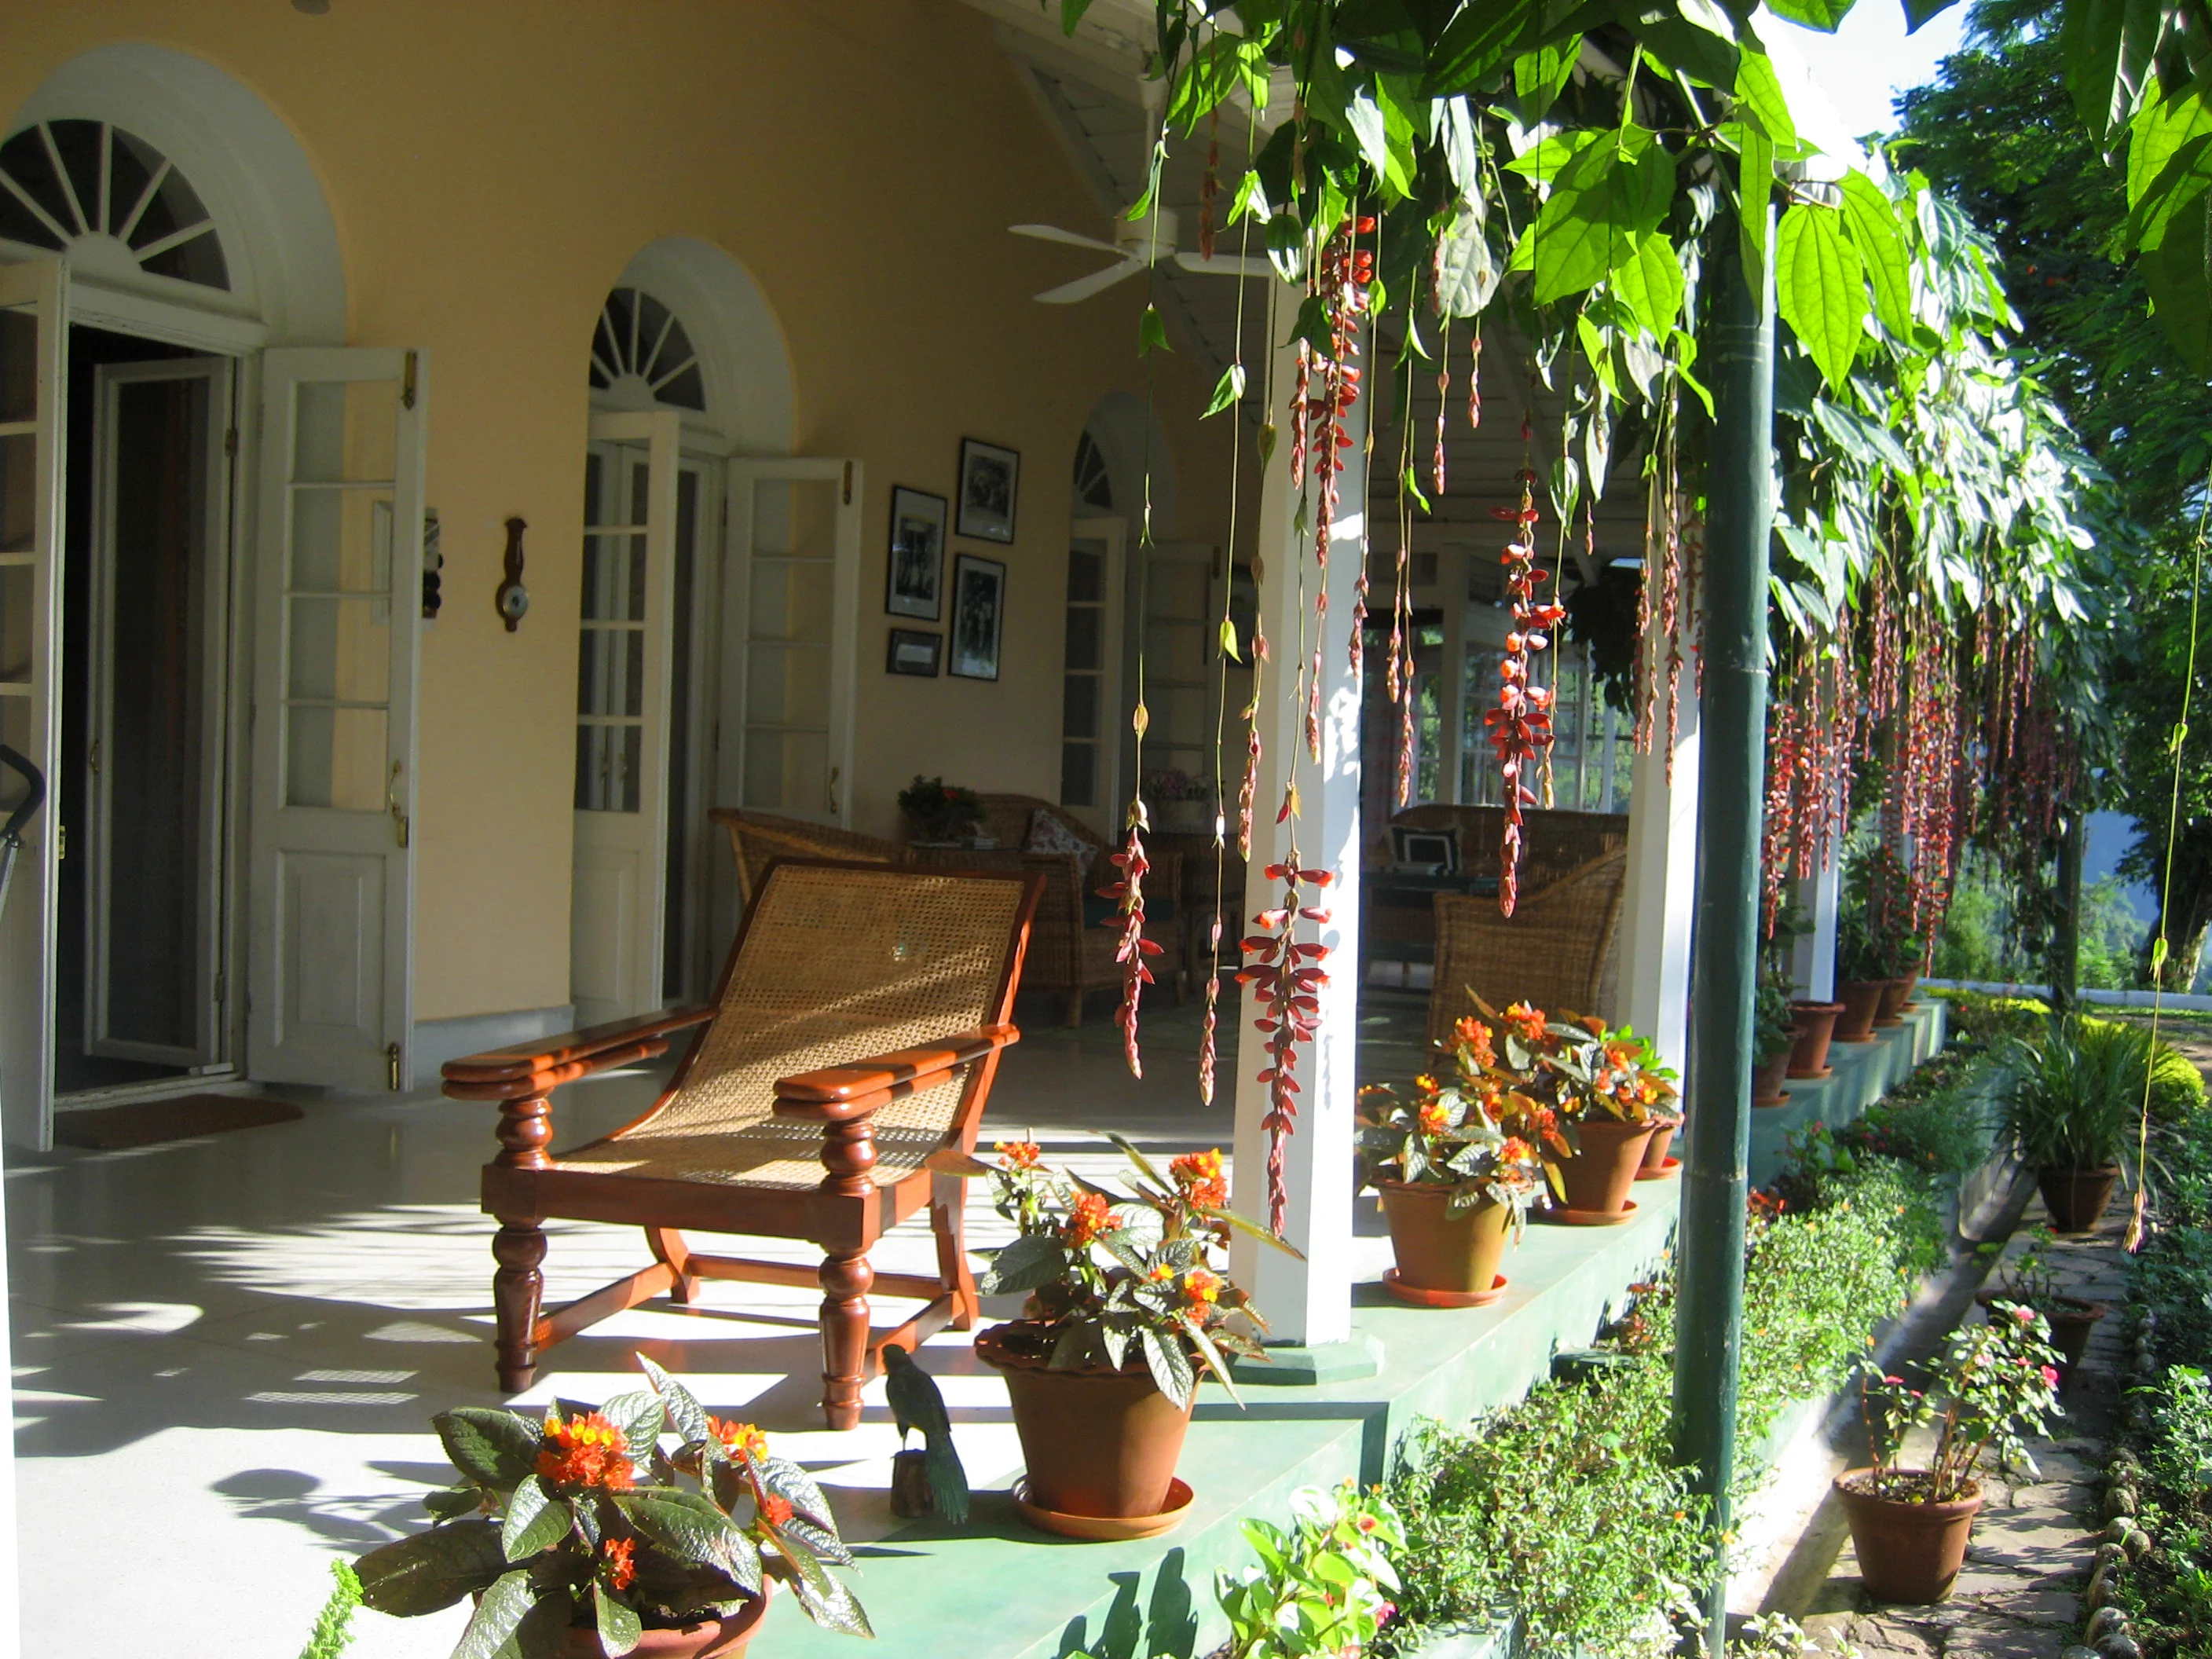 Planter's chairs in the verandah [Image via Travel Journalist, Subhasish Chakraborty]